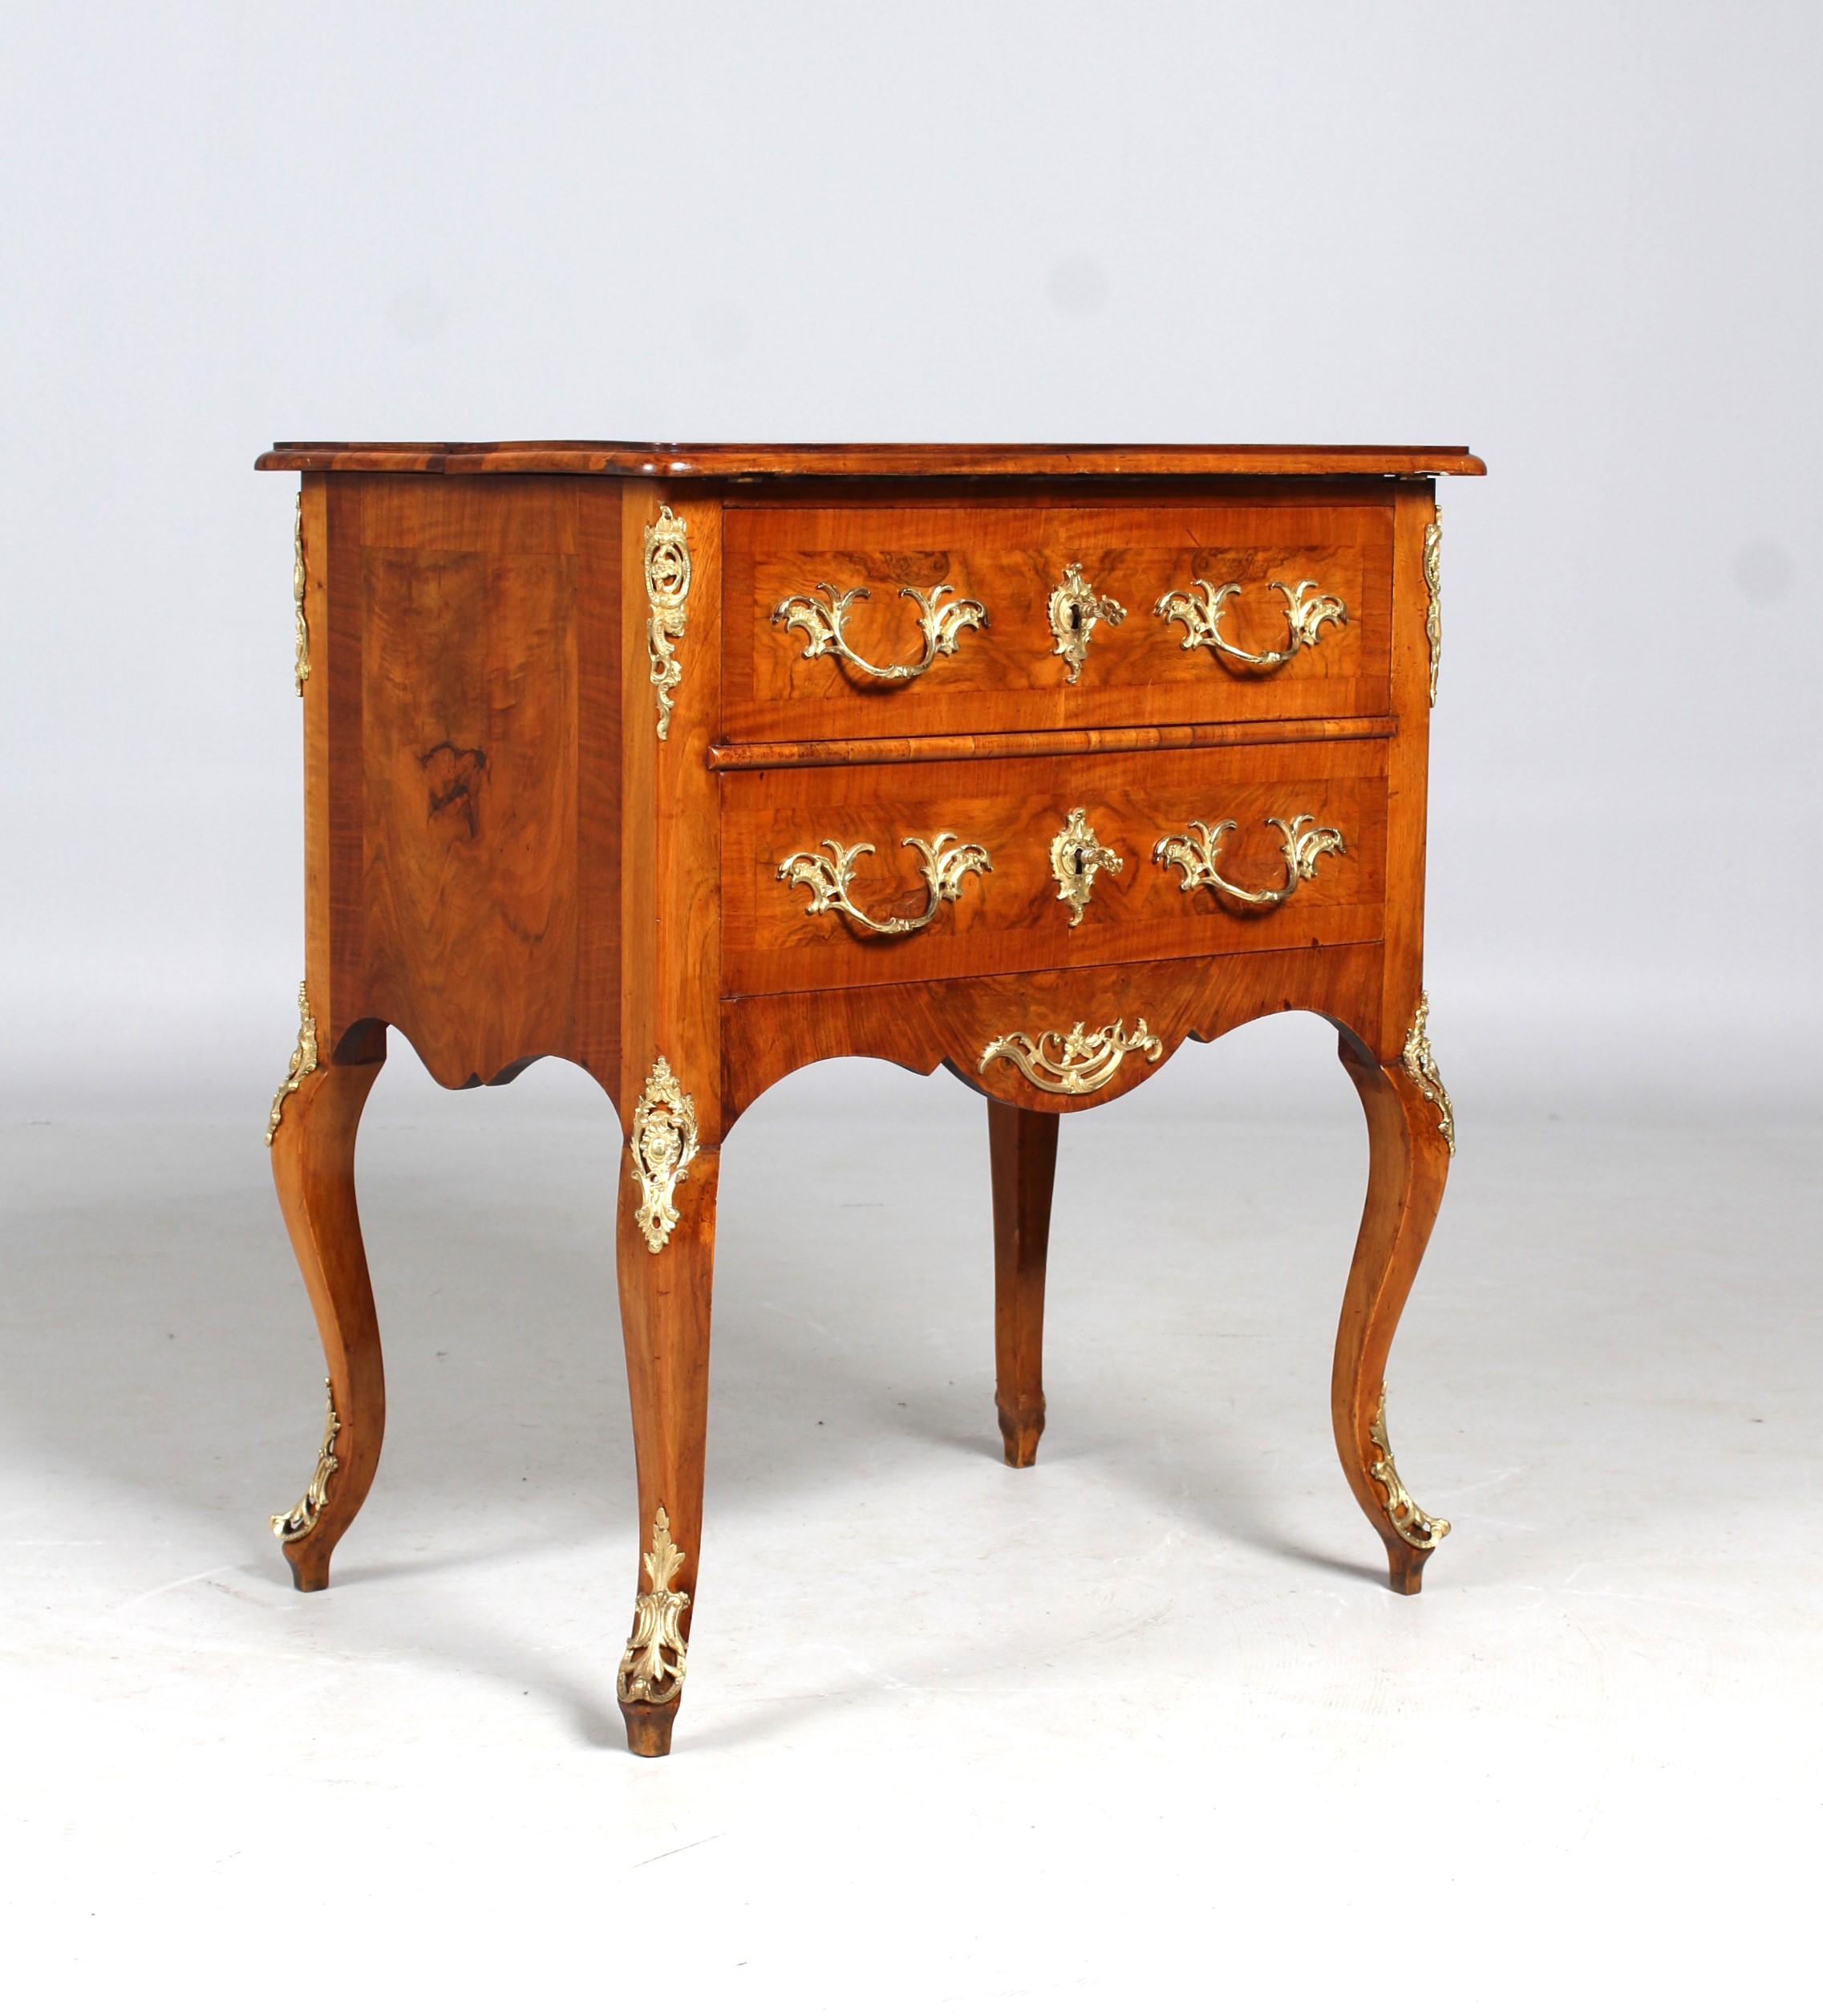 Very rare antique desk or secretary, so-called bureau à transformation 